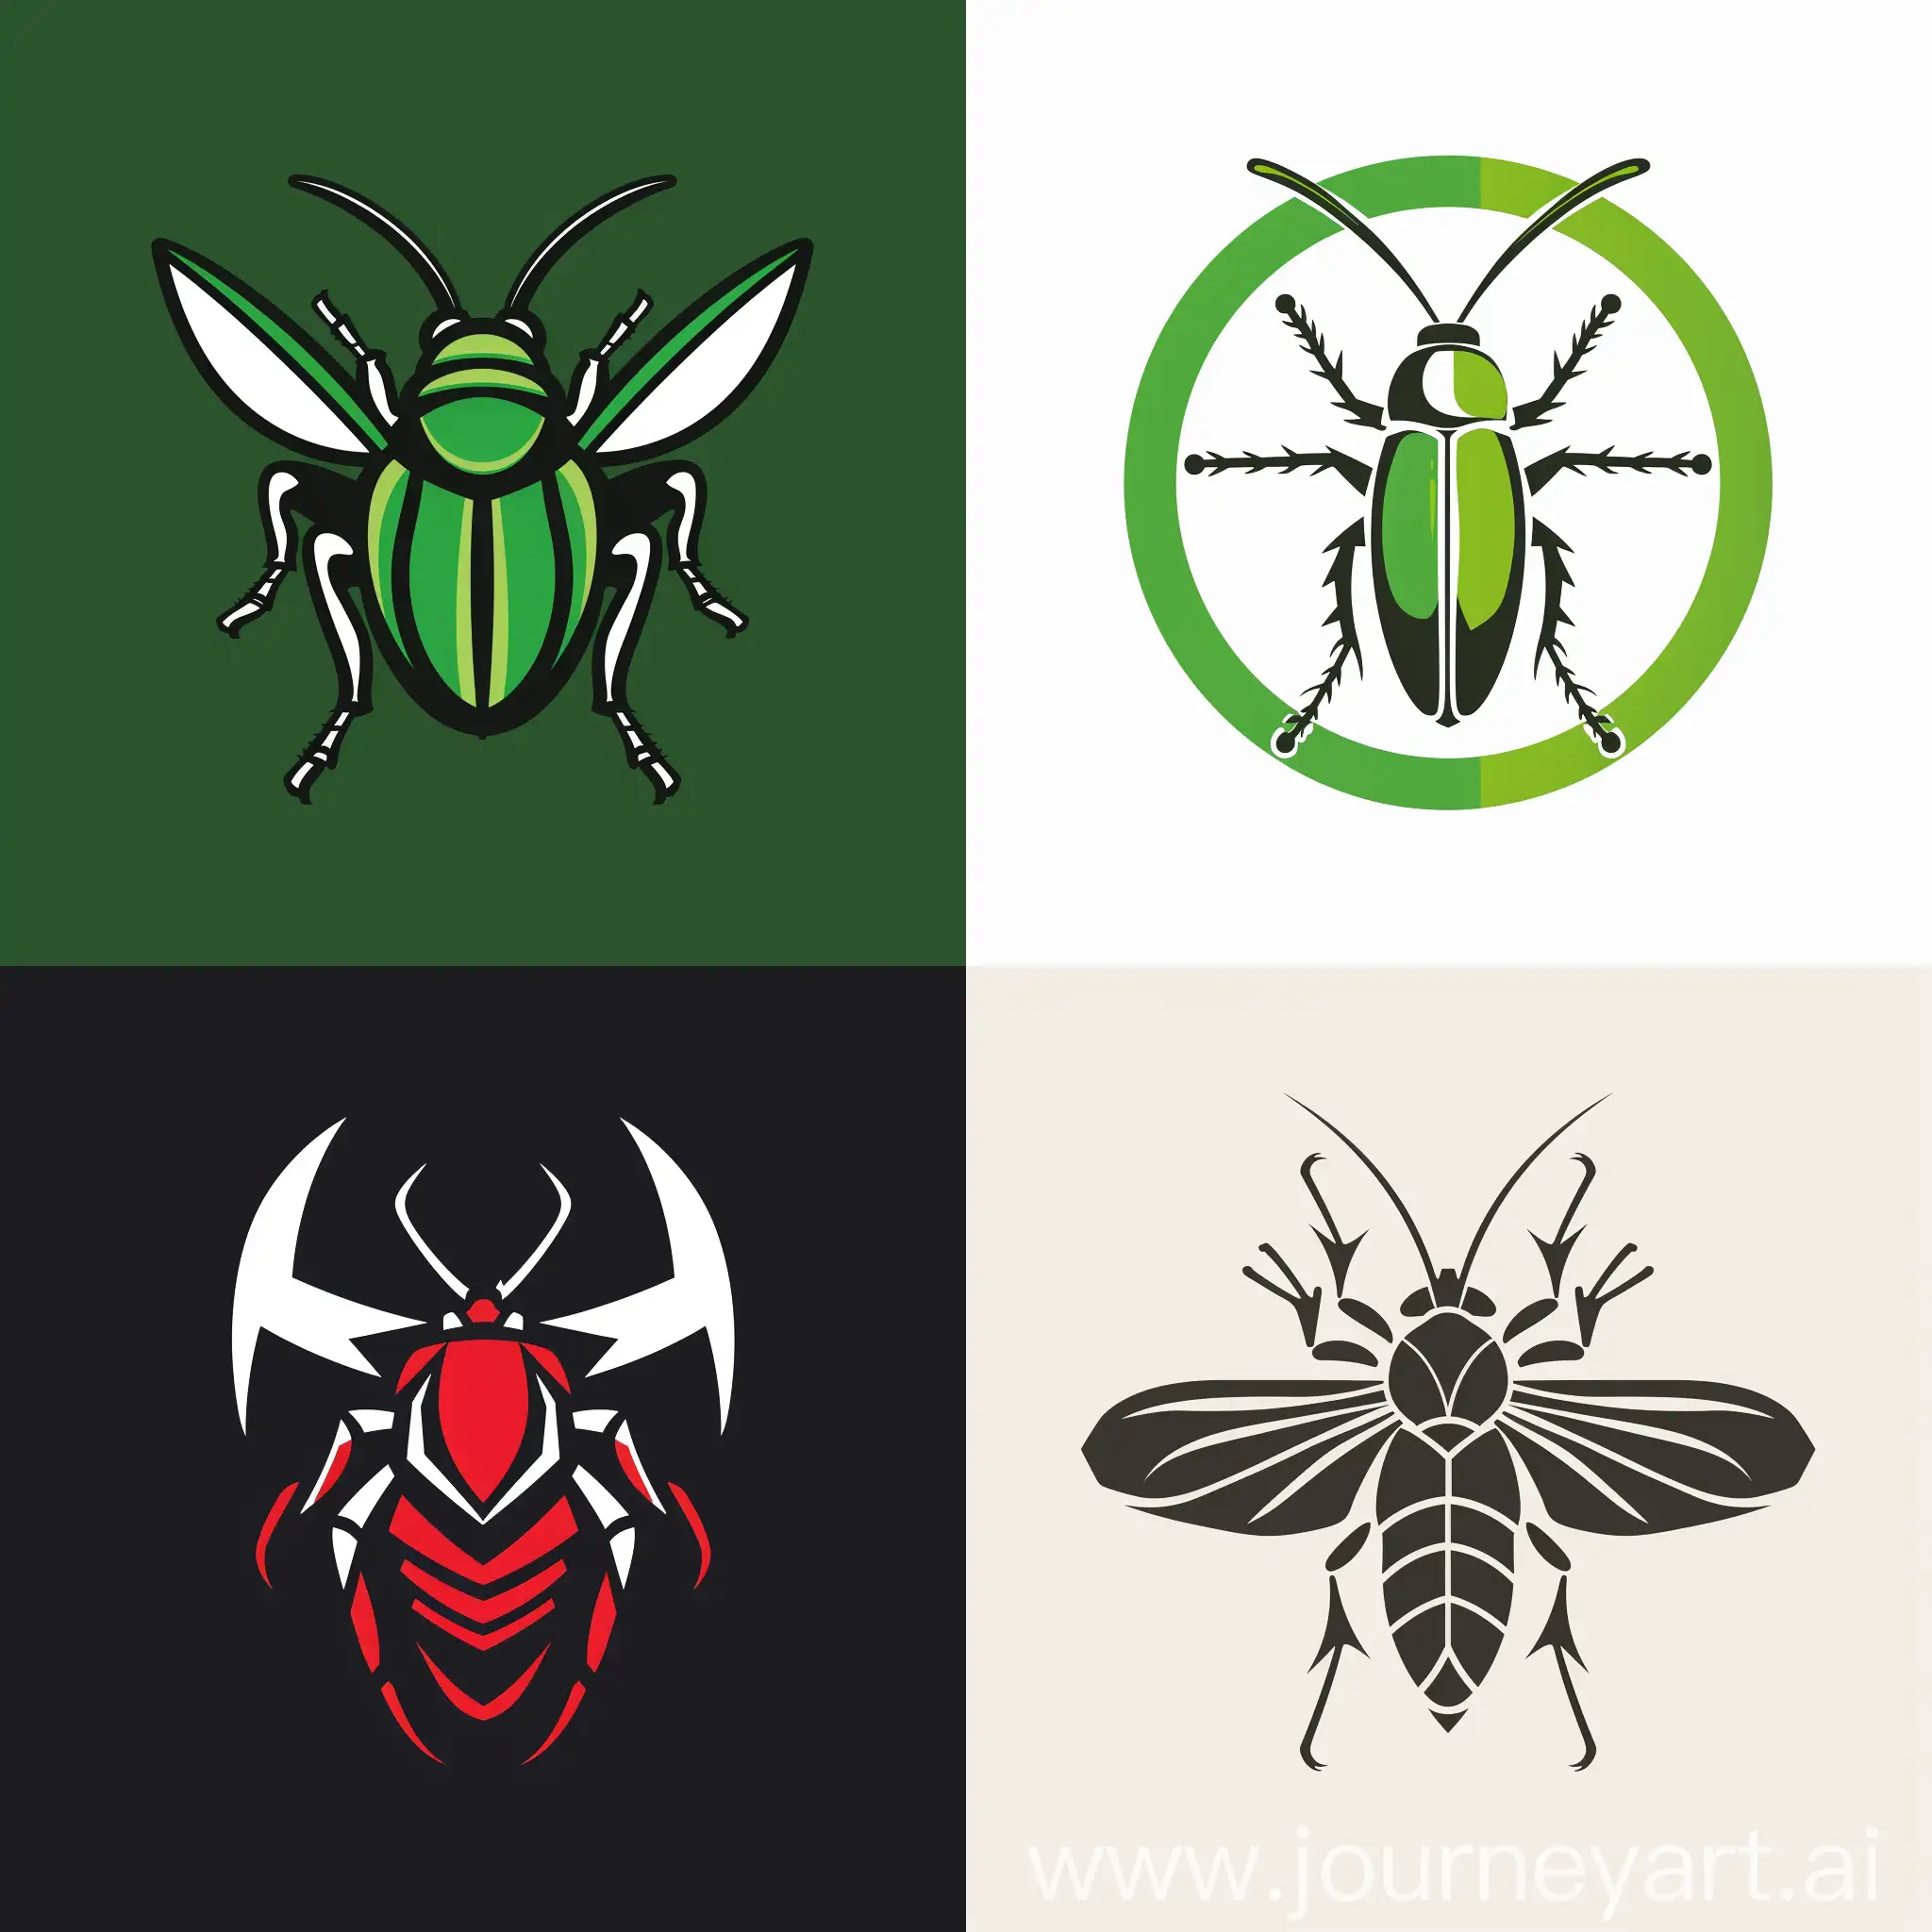  Логотип для производства спортивного питания из насекомых
